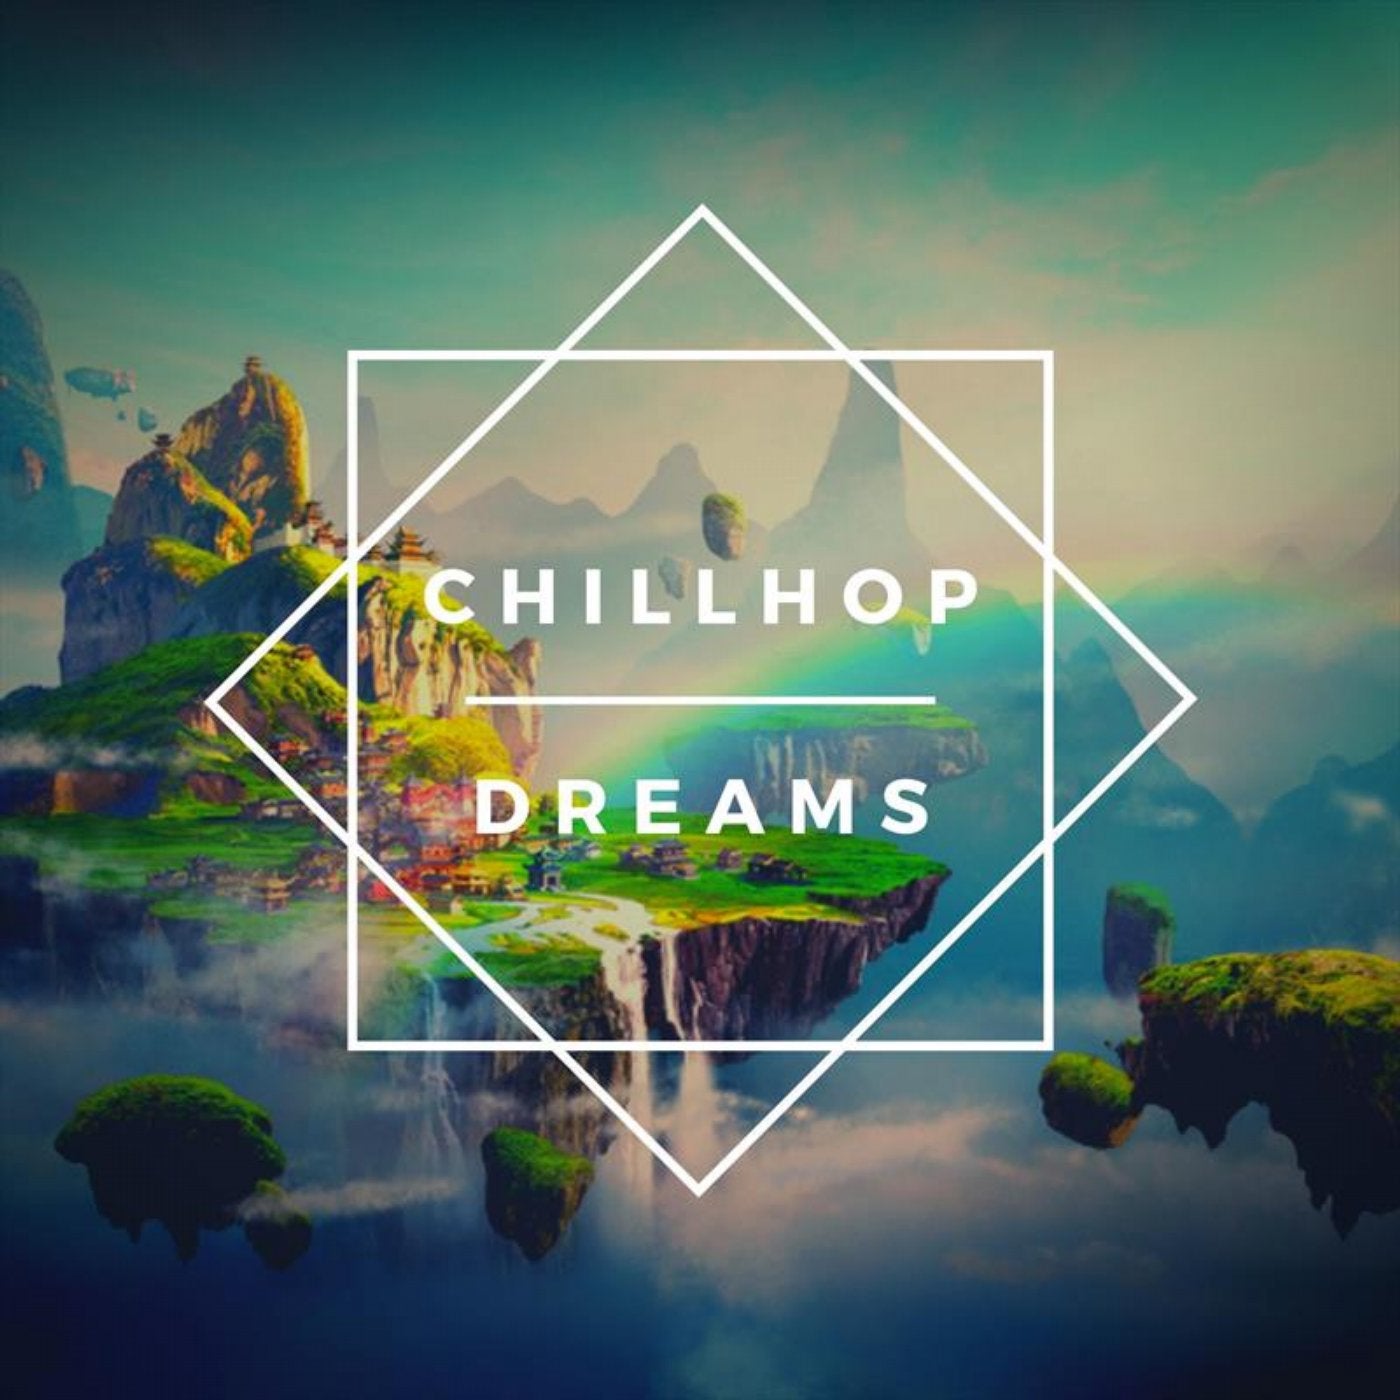 Chillhop Dreams